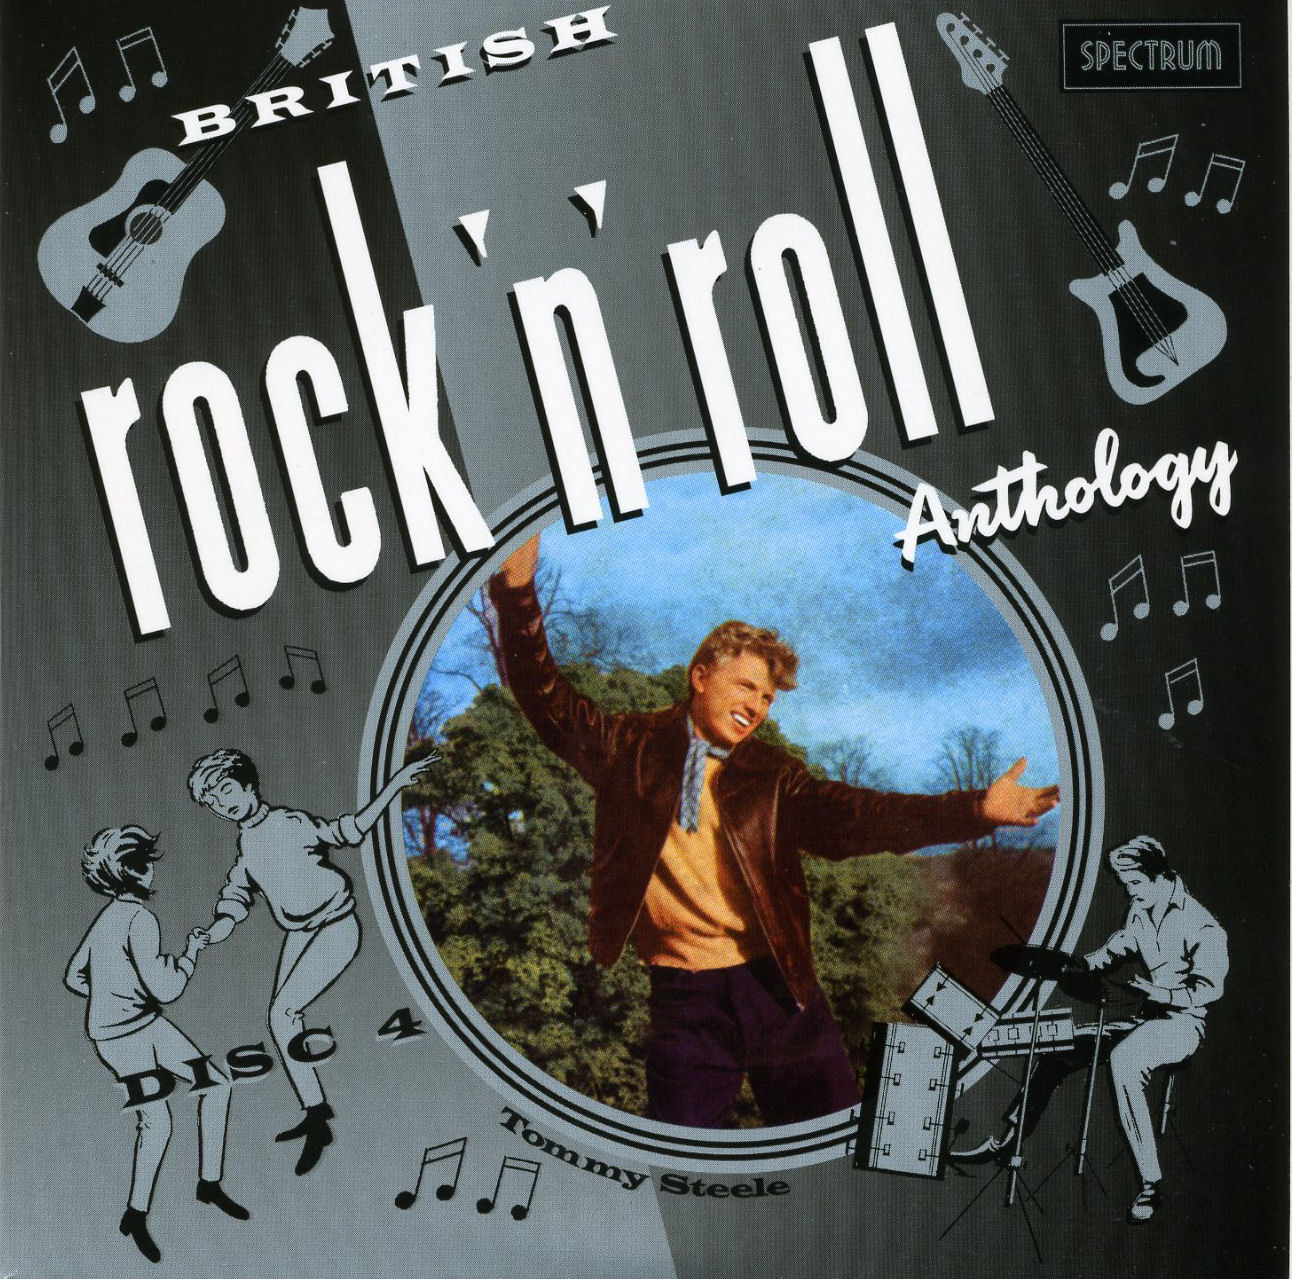 British Rock n Roll Anthology 1956-64 